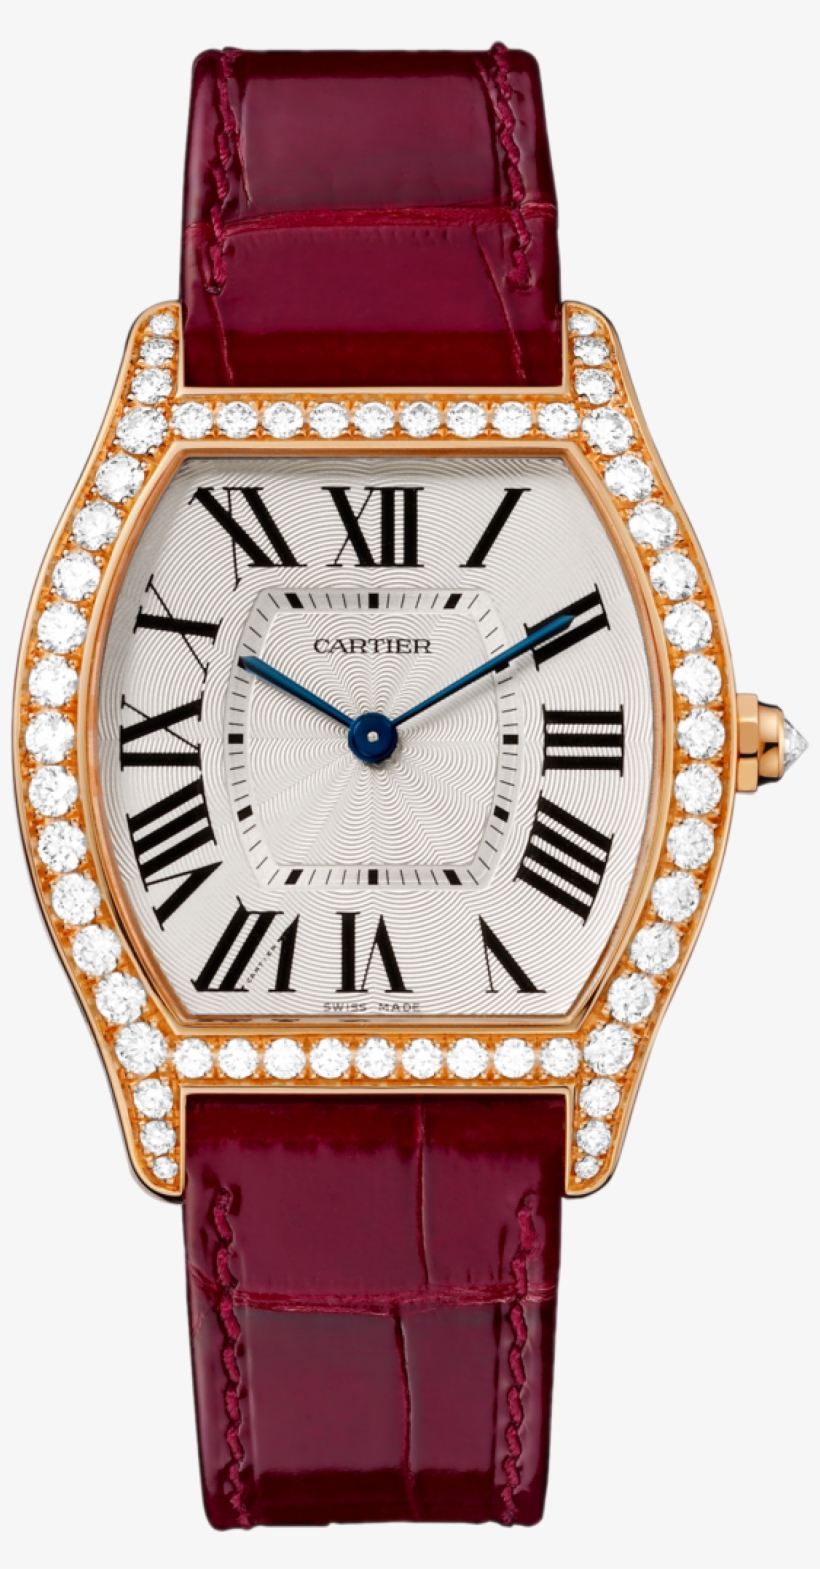 #cartier Tortue Pink Gold #watch - Cartier Wa501009, transparent png #1347228